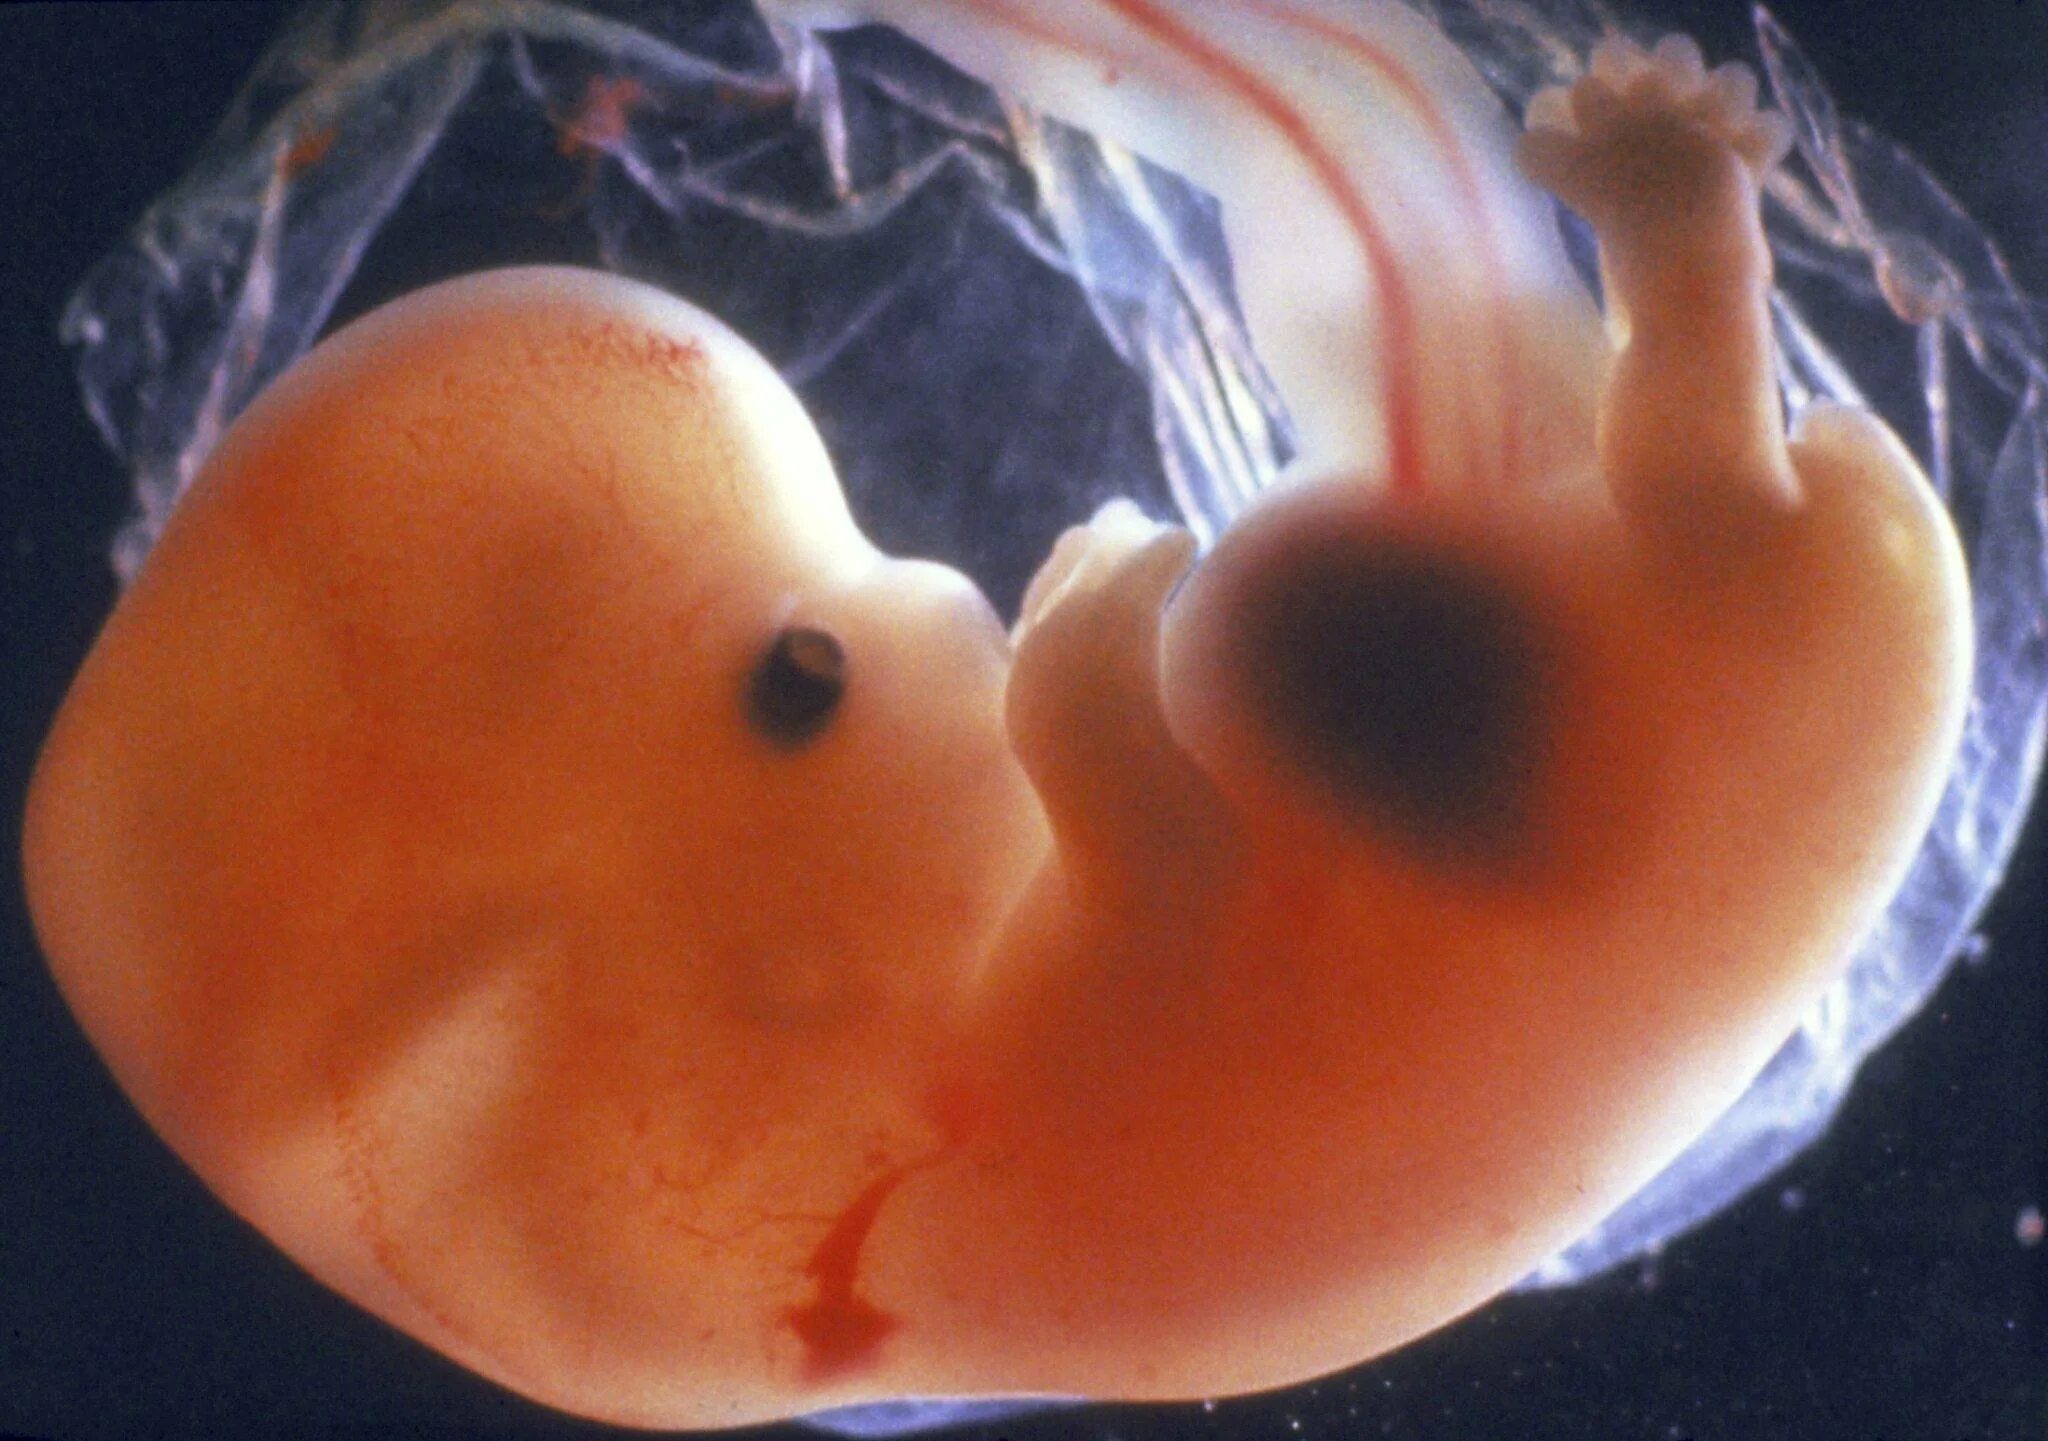 Эмбрион на 6 неделе беременности. Эмбрион на 7 неделе беременности. 5 6 Недель беременности фото эмбриона. Беременность 6 недель фото эмбриона. Большие девочки 8 неделя